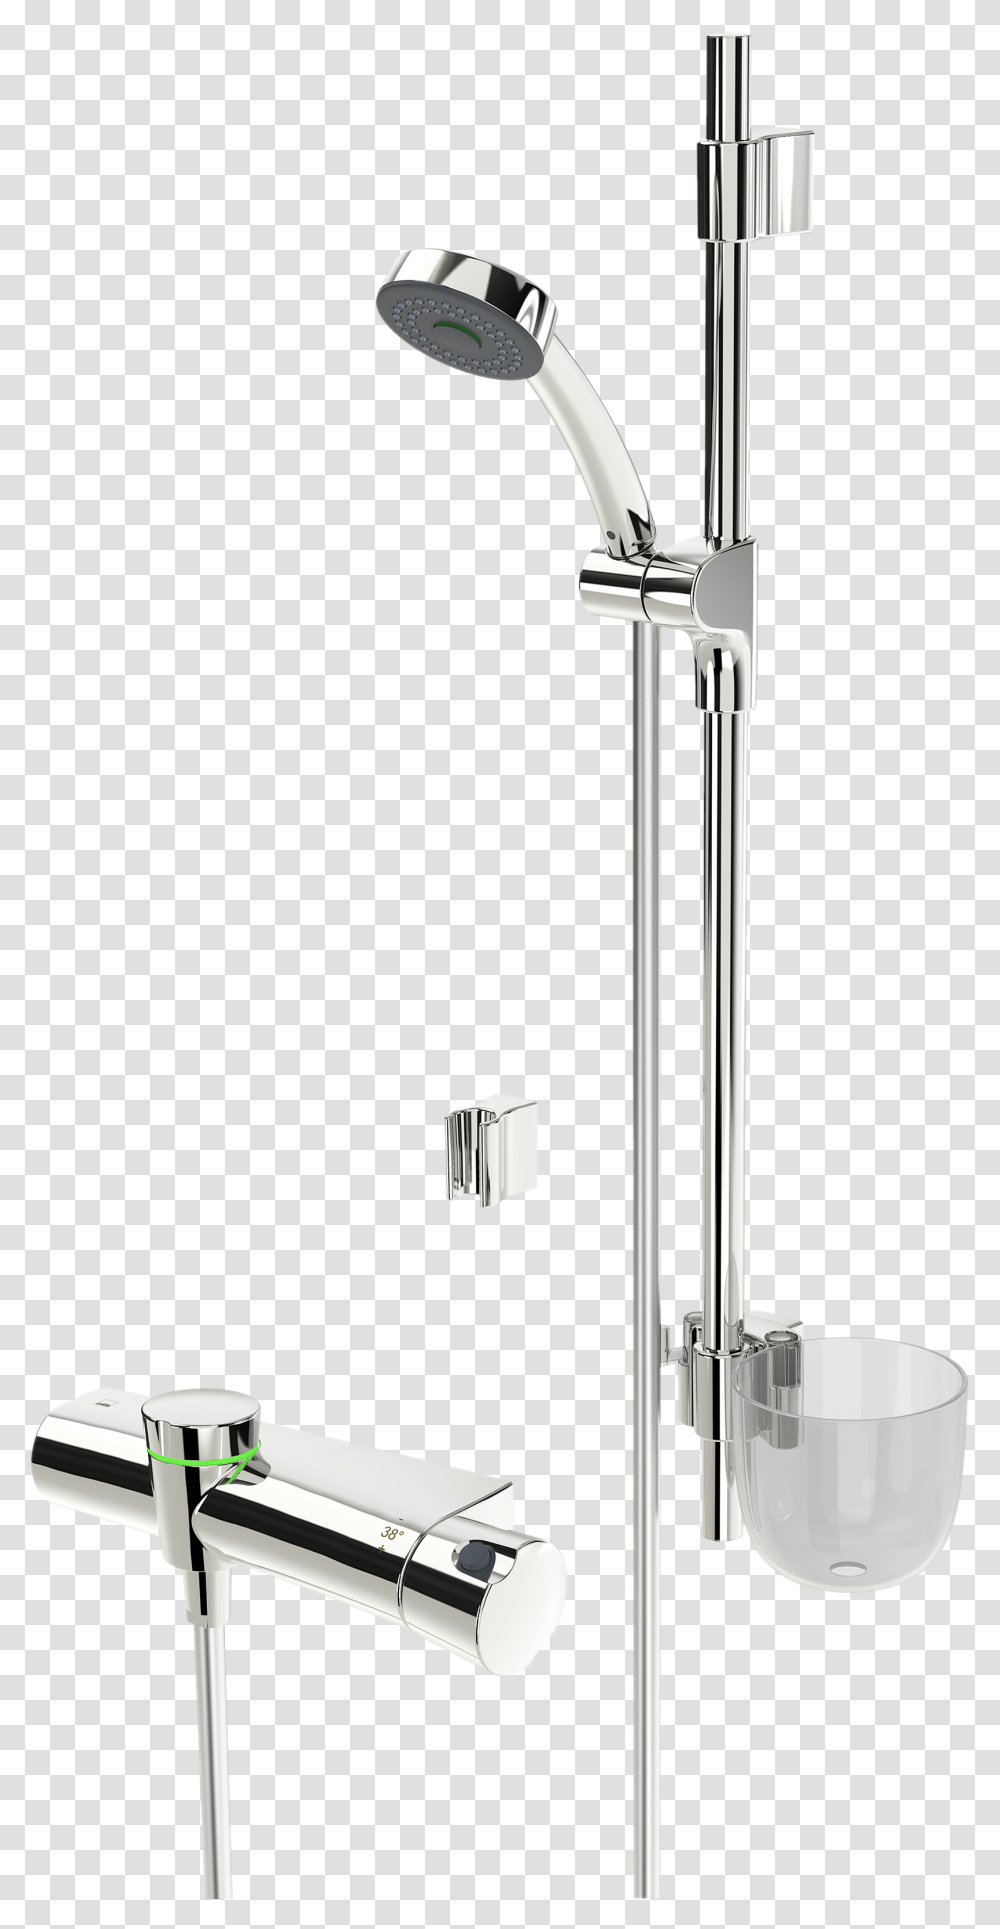 Shower Faucet With Shower Set 3 V Shower Head, Indoors, Sink, Sink Faucet, Tap Transparent Png